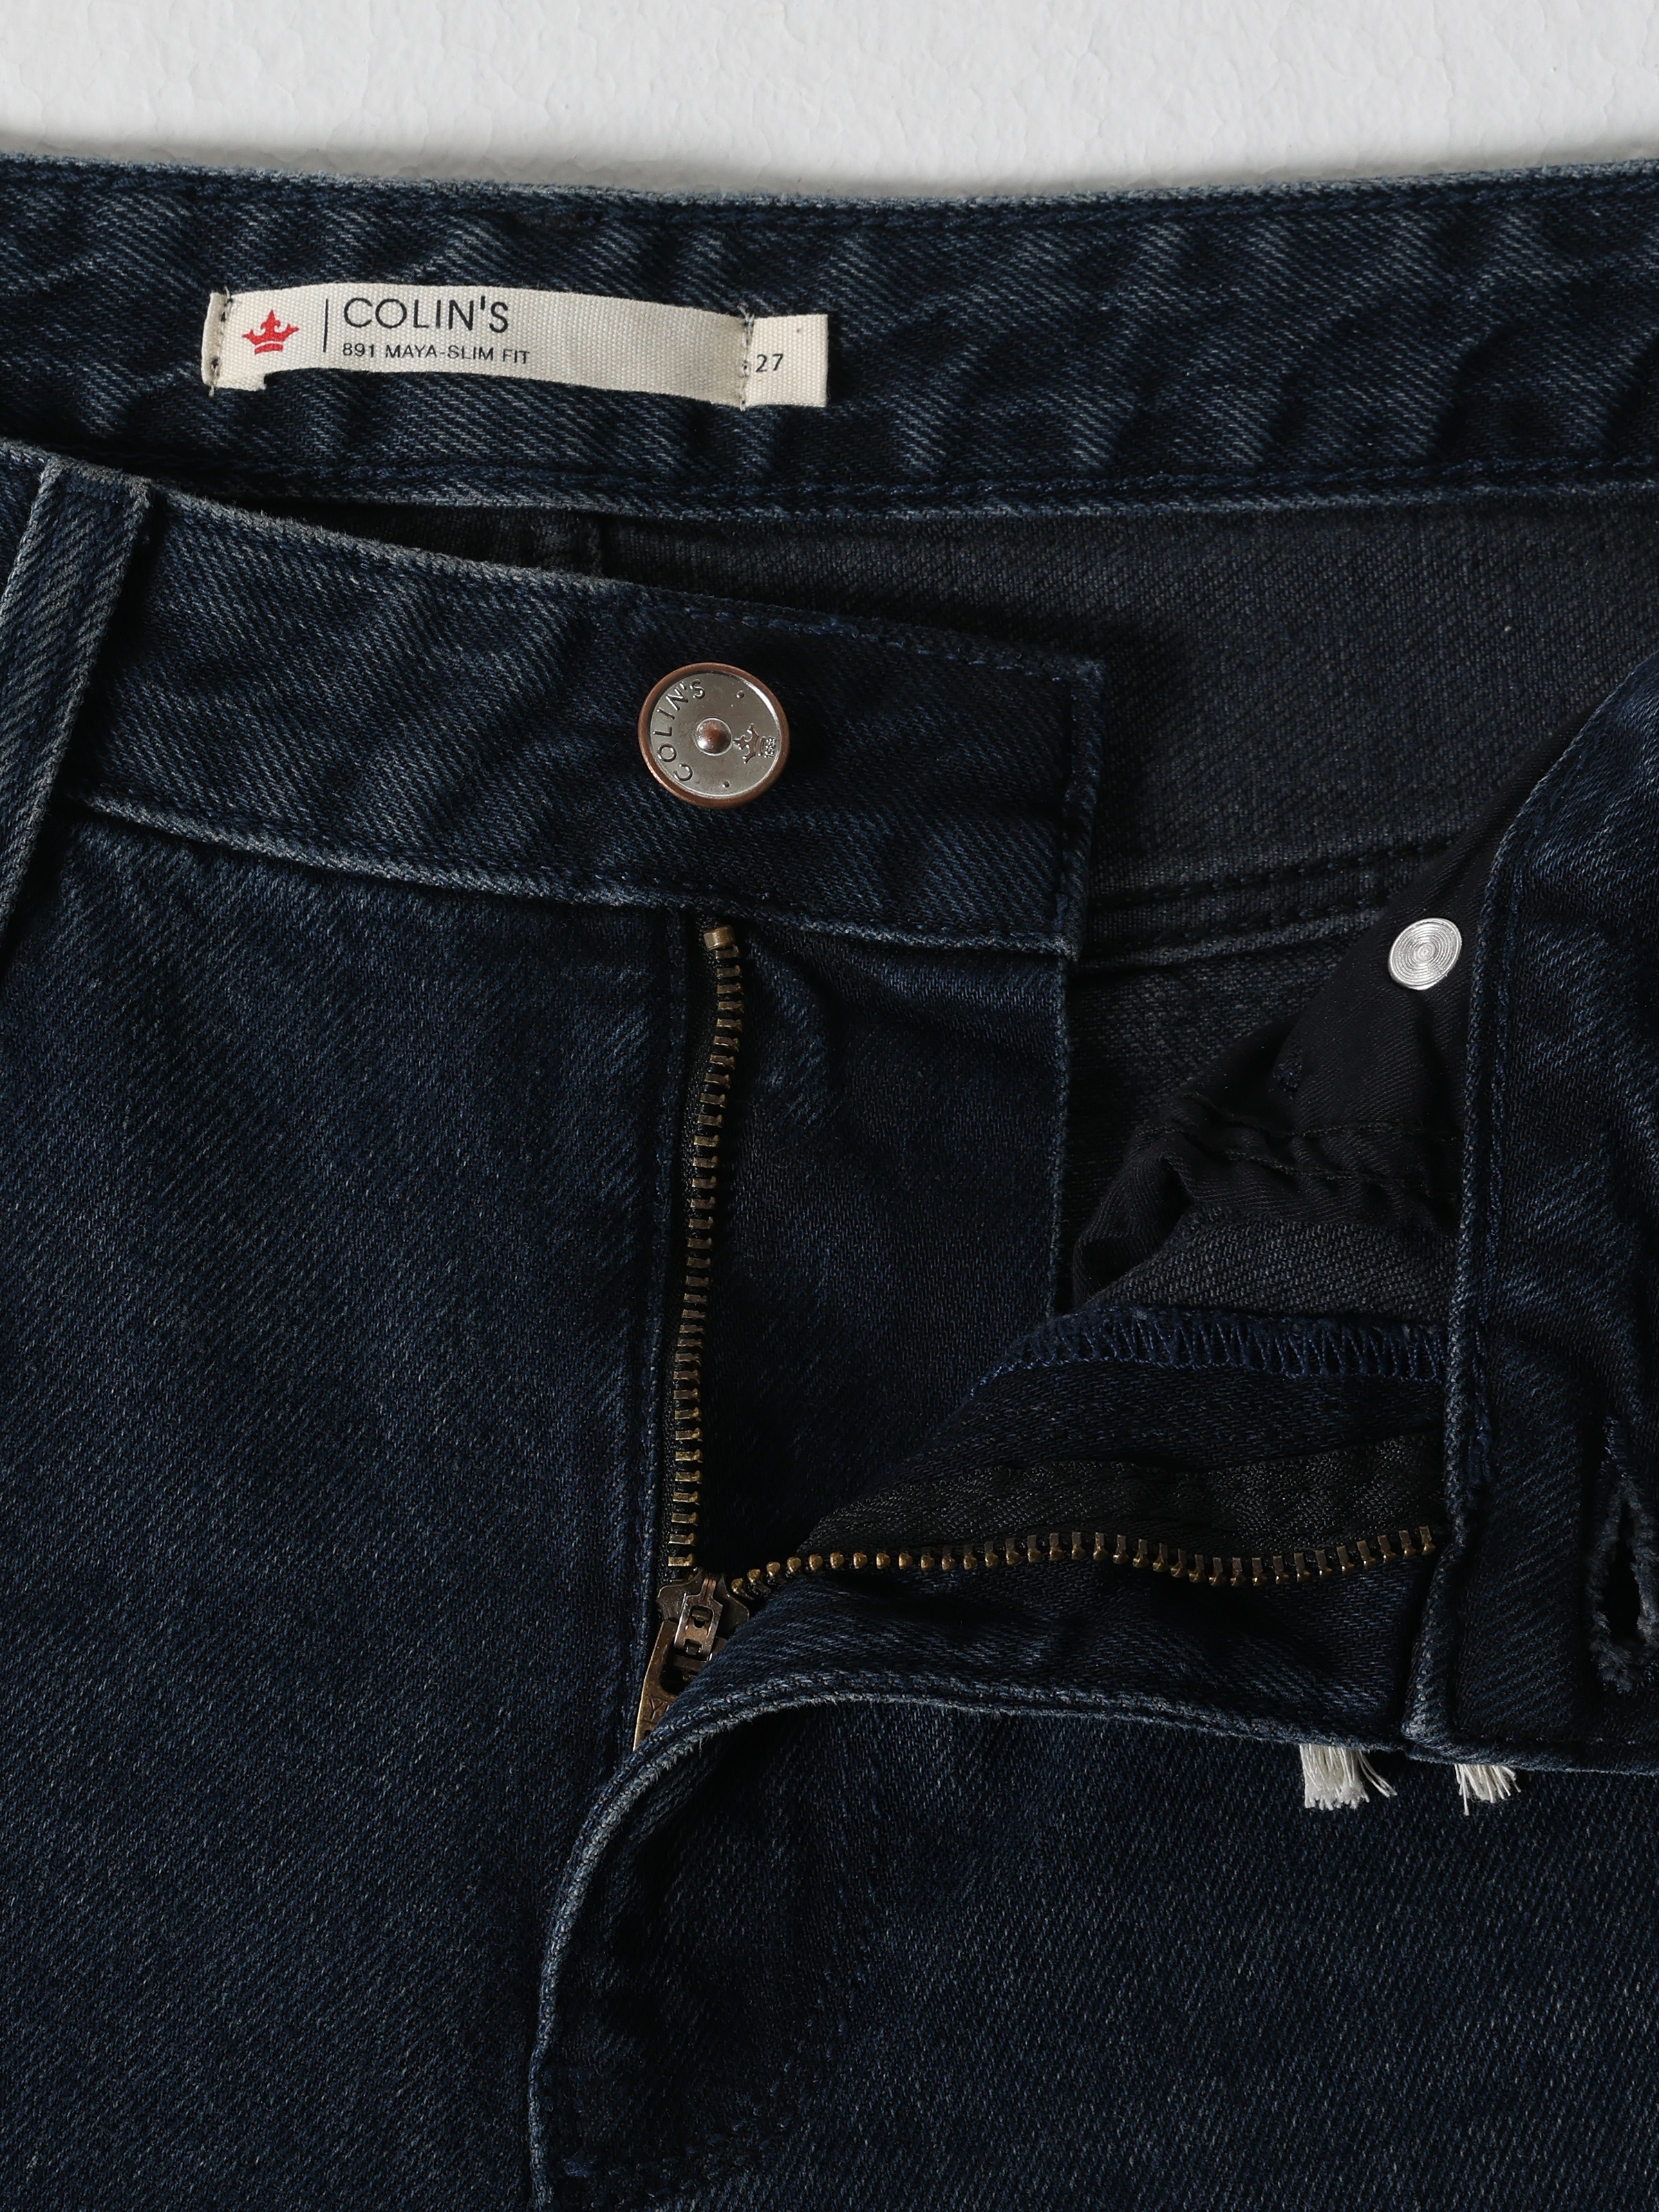 Afișați detalii pentru Pantaloni De Dama Albastru inchis Slim Fit 891 MAYA 